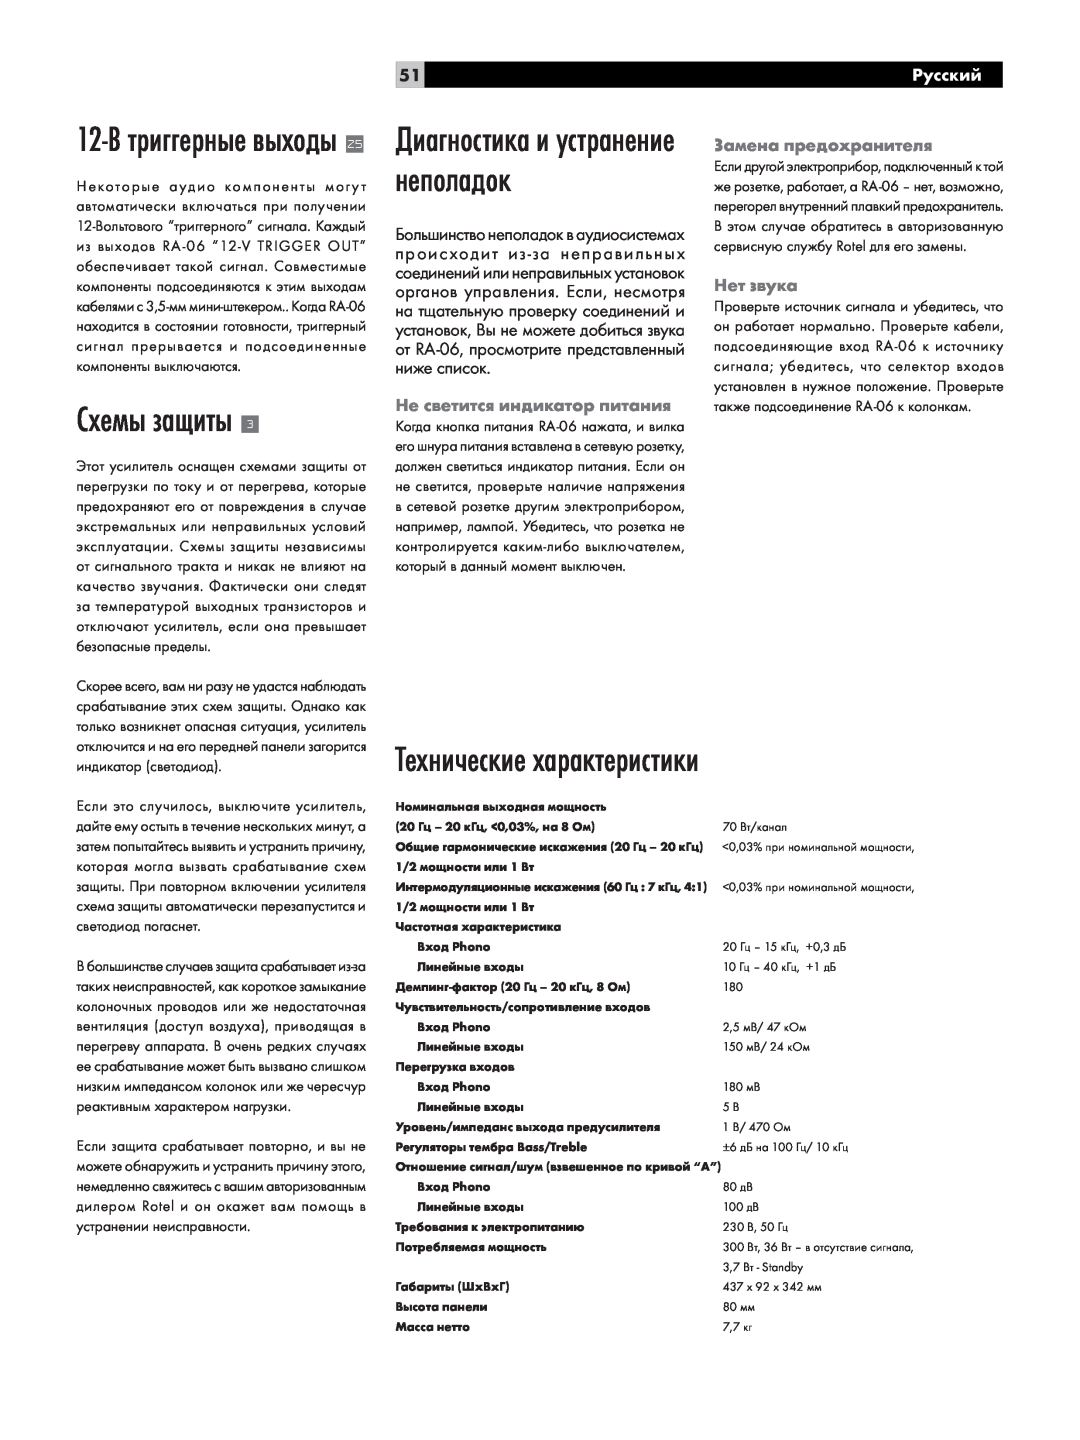 Rotel RA-06 Схемы защиты, Технические характеристики, 12-Втриггерные выходы, Диагностика и устранение неполадок, Русский 